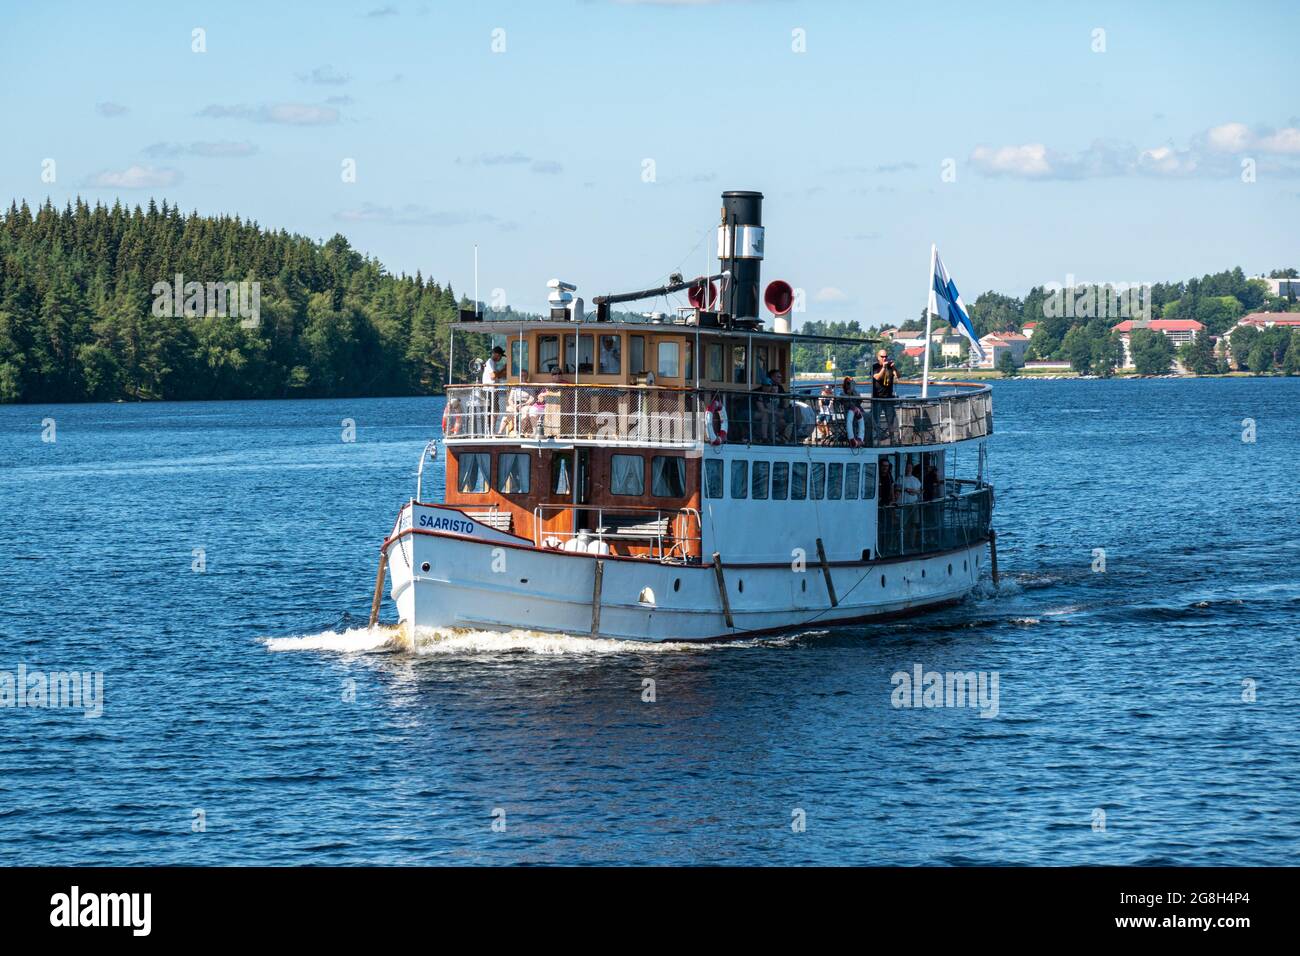 Bateau à vapeur S/S Saaristo faisant une croisière sur le lac Saimaa à Savonlinna, en Finlande Banque D'Images